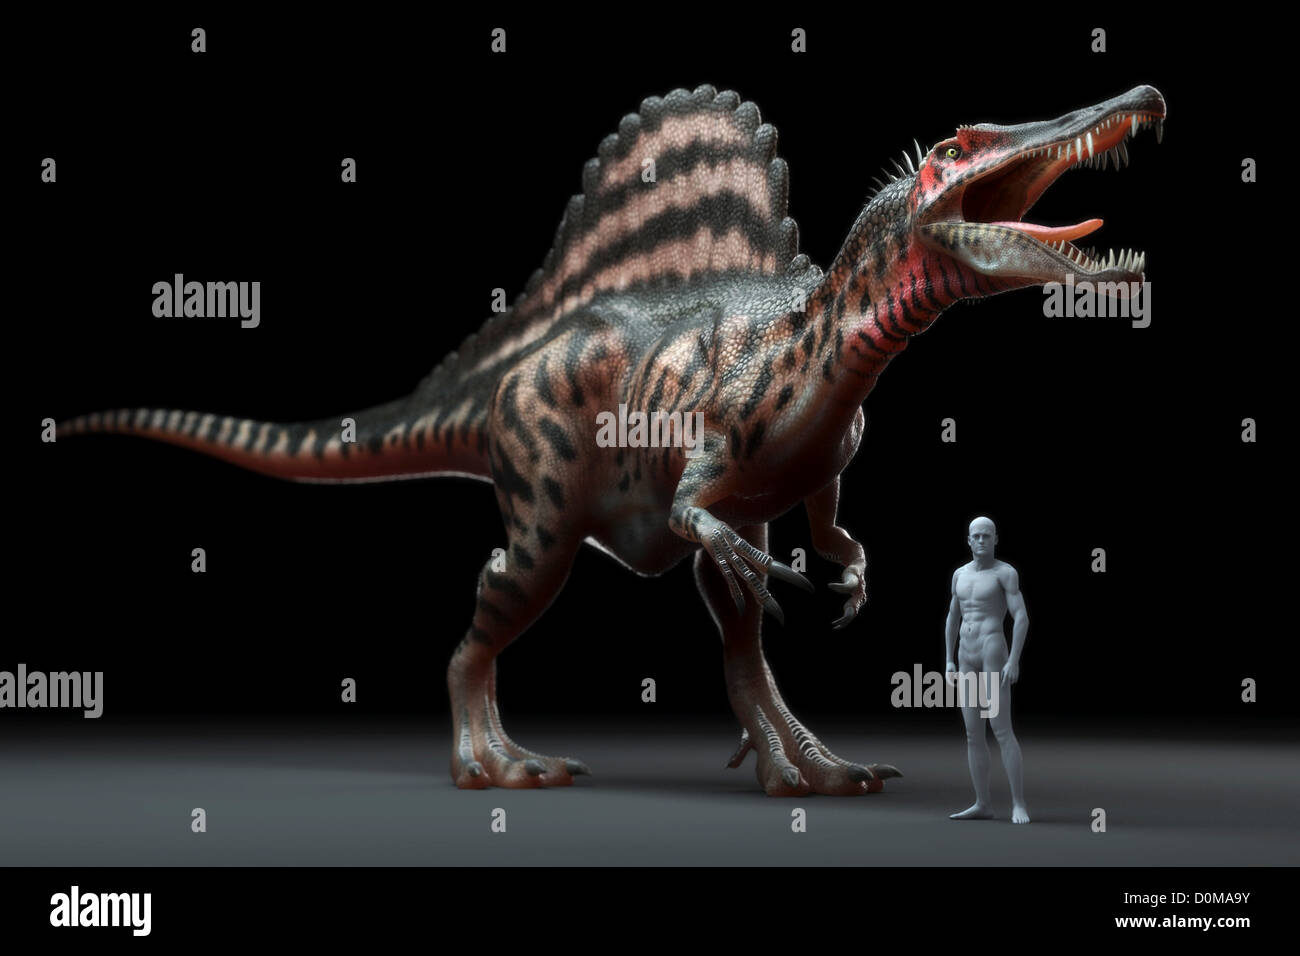 Modell eines Spinosaur Dinosauriers zeigt die Größe im Vergleich zu einem Menschen. Stockfoto